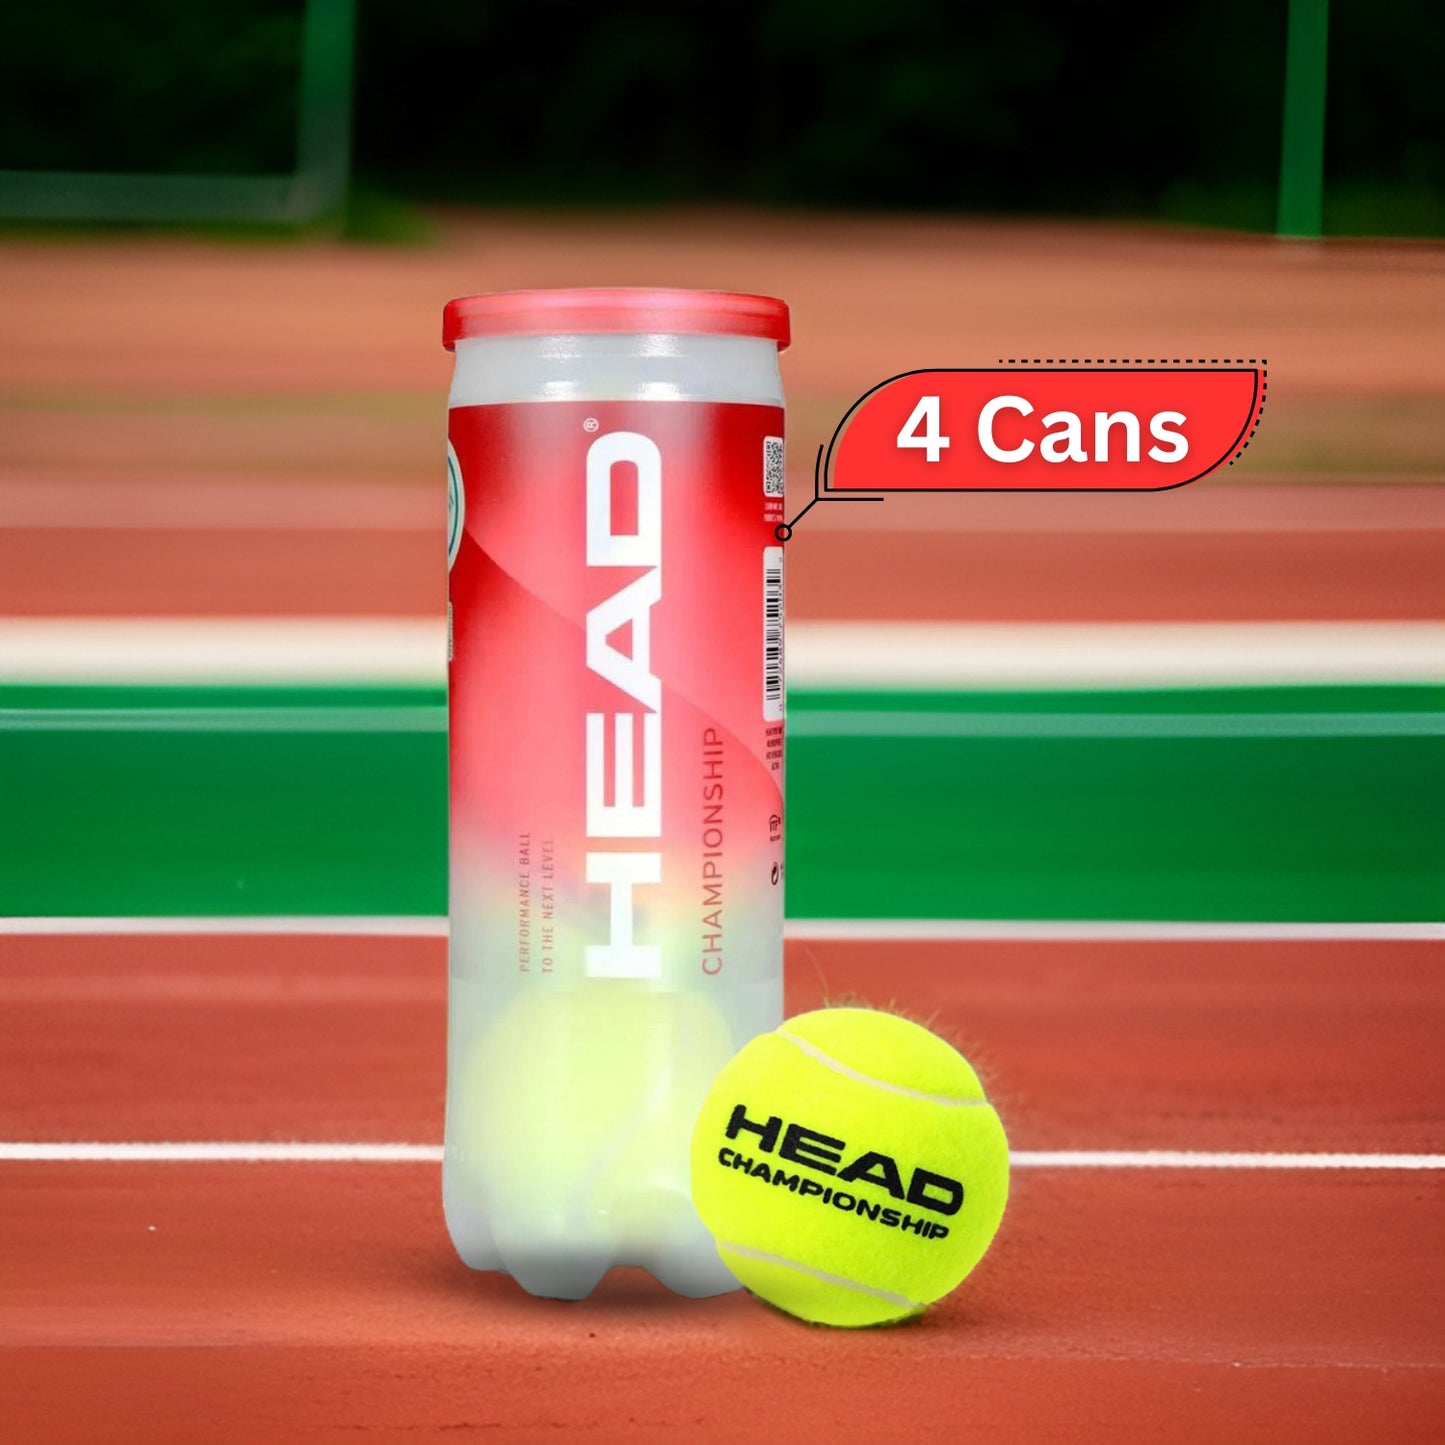 Head Championship Tennis Balls Dozen (4 Cans) - Best Price online Prokicksports.com